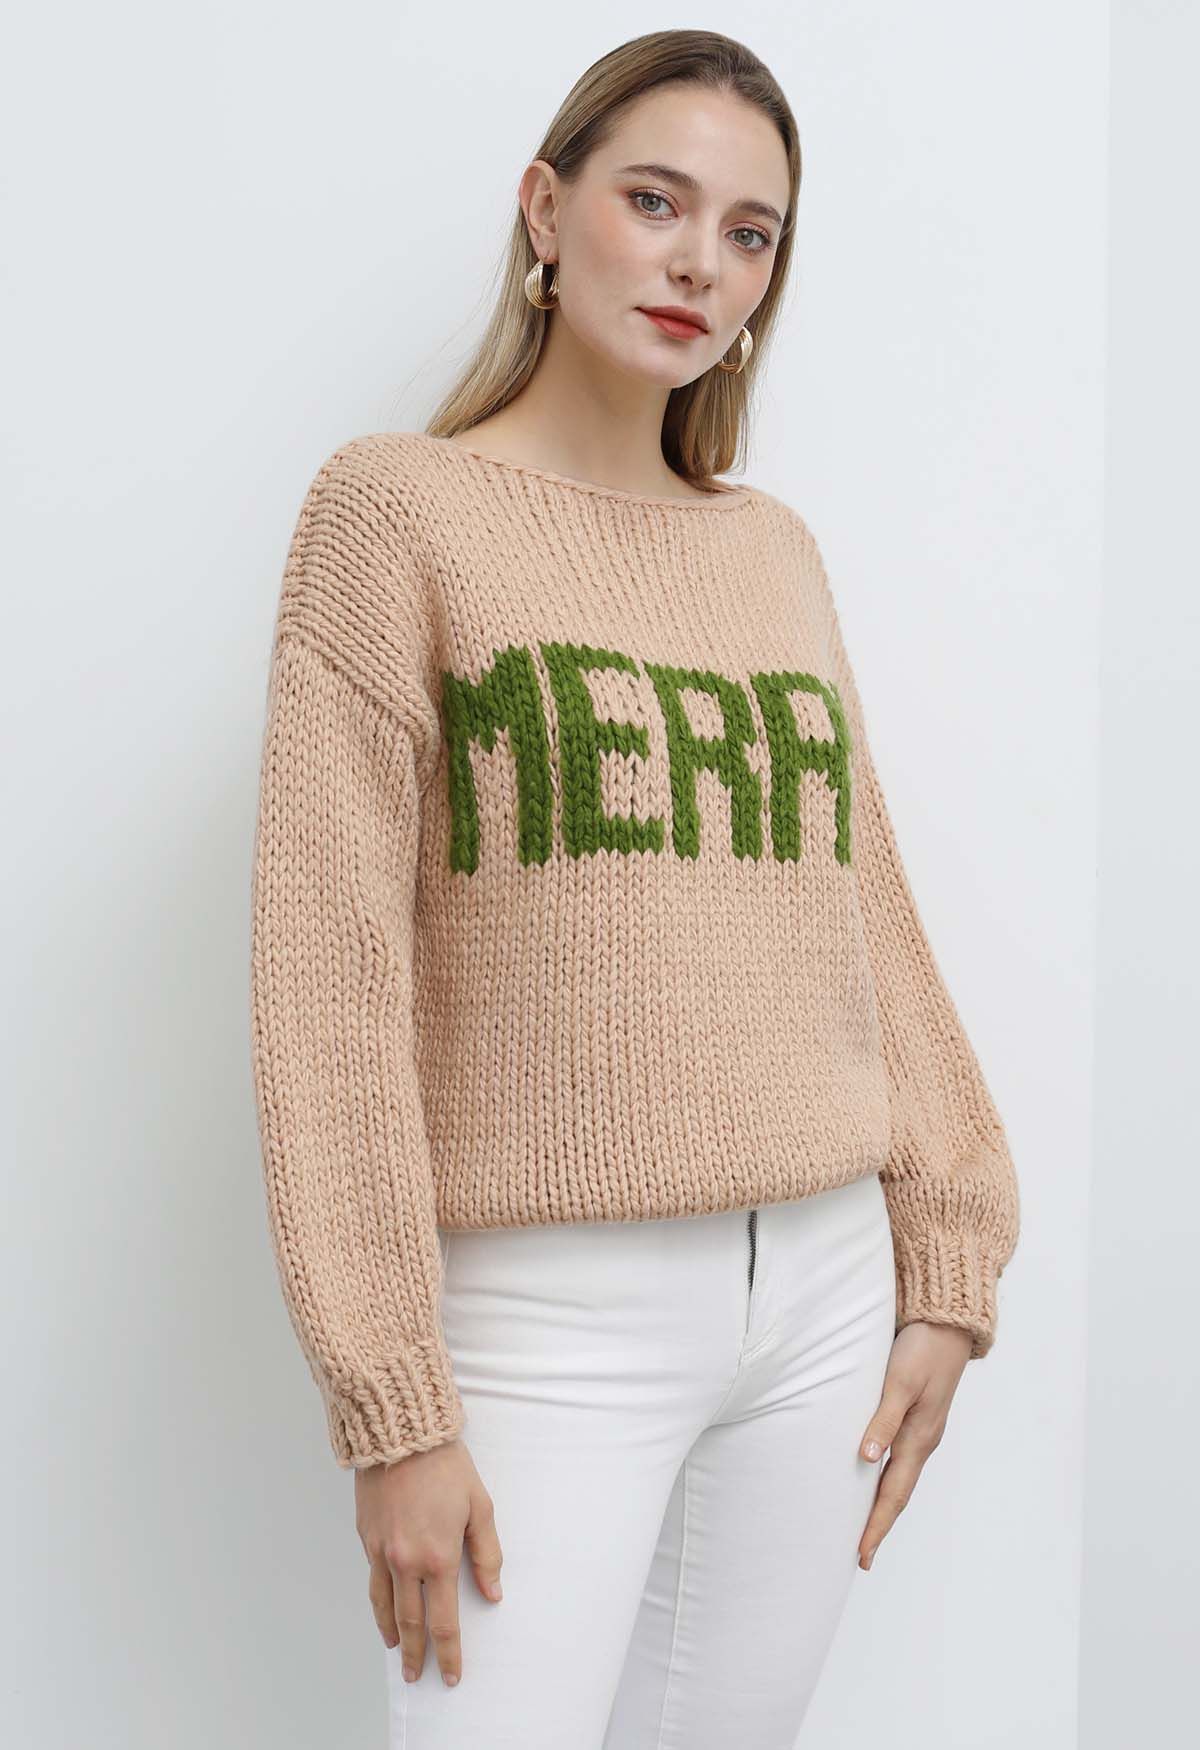 Suéter tejido a mano grueso con cuello barco Merry